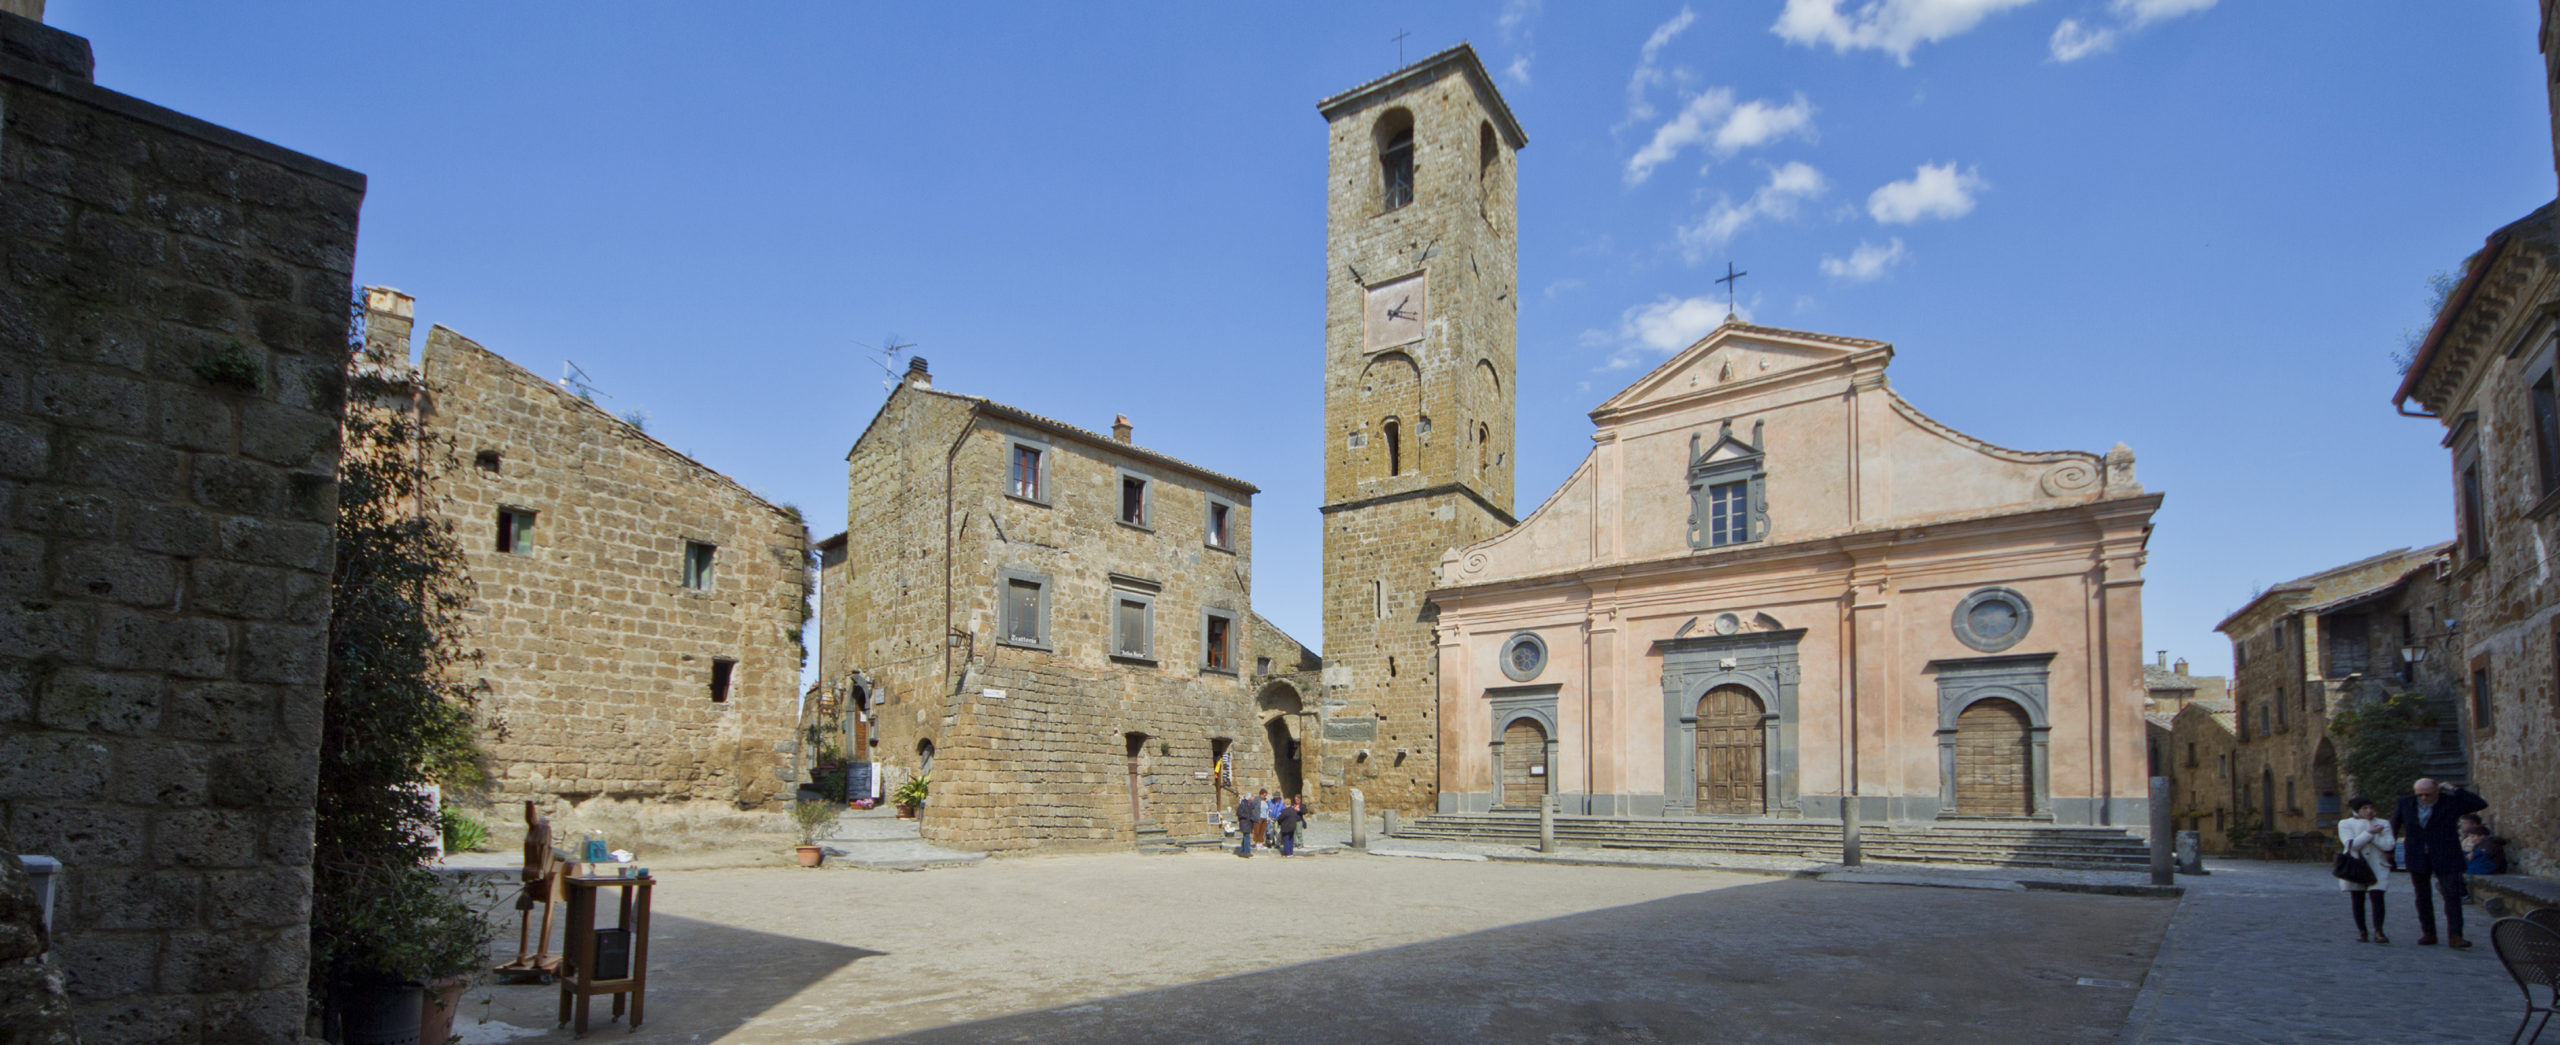 Civita di Bagnoregio - Piazza San Donato